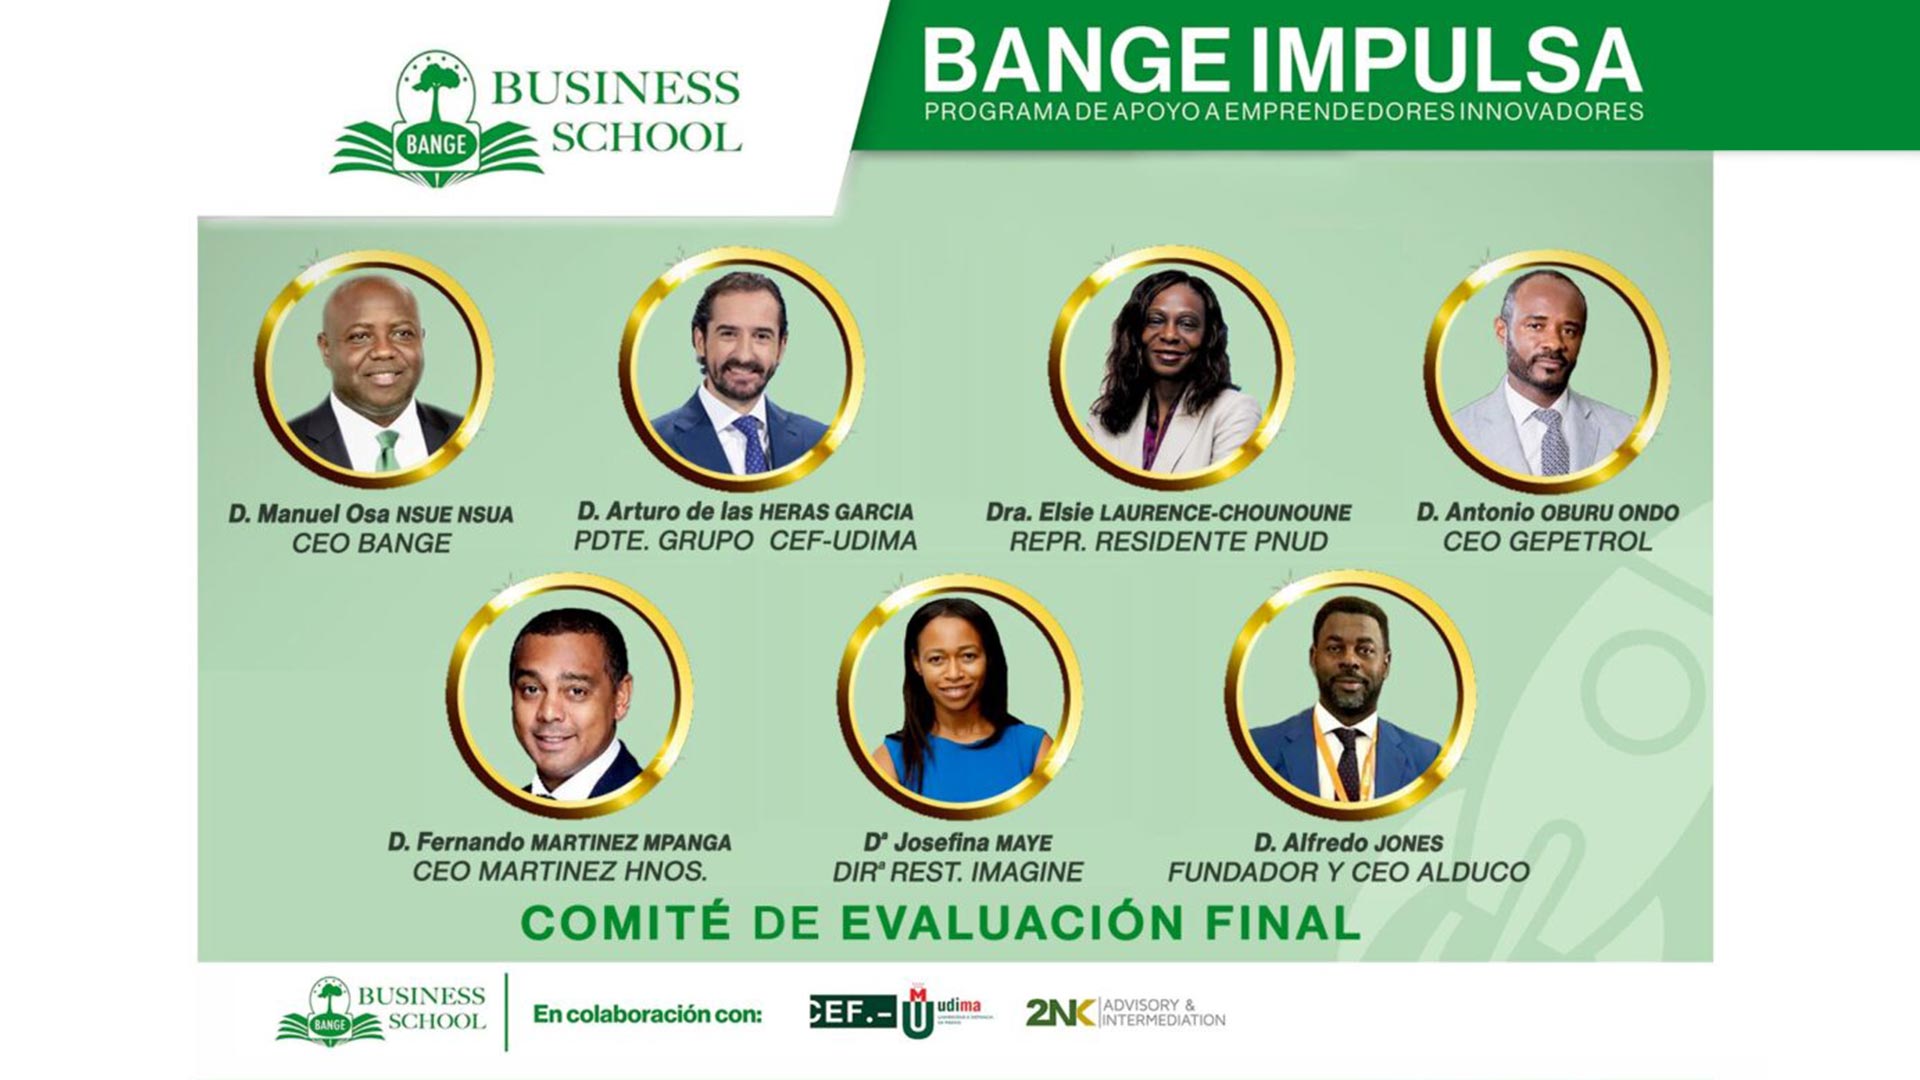 BANGE IMPULSA comunica la composición del jurado que determinará los proyectos ganadores